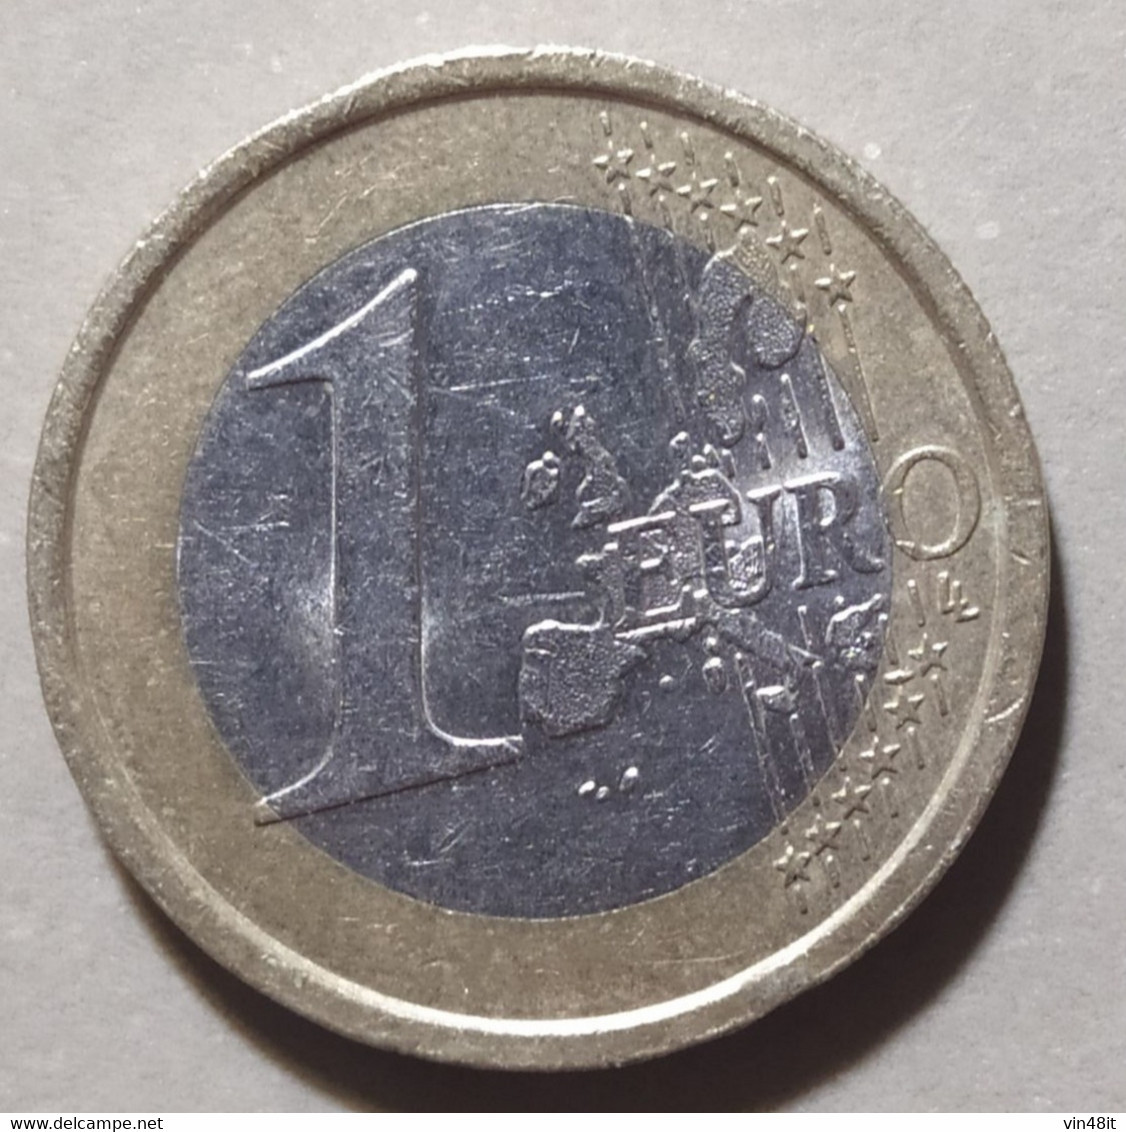 2003 - ITALIA  REPUBBLICA  - MONETA IN EURO  -  DEL VALORE DI 1  EURO - USATA - - Italy